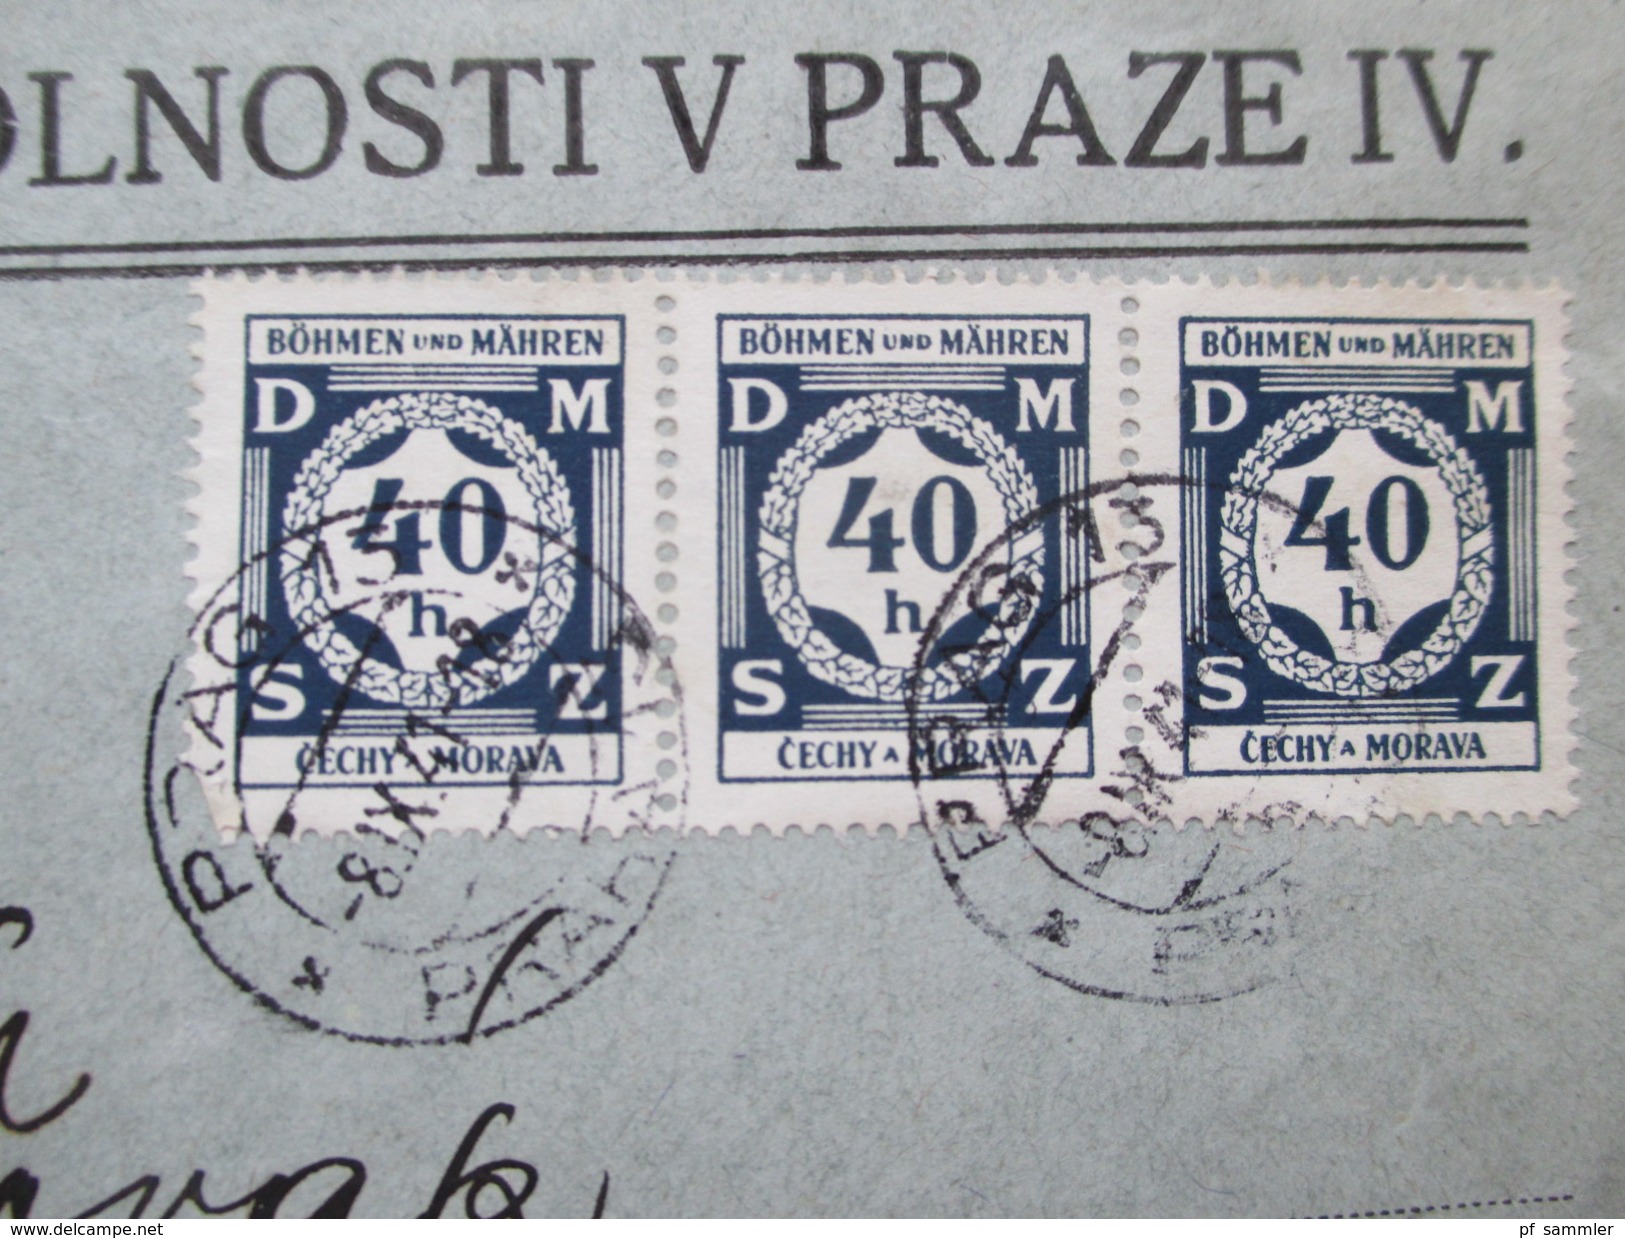 Deutsches Reich Böhmen Und Mähren 1941 Dienst Nr. 2 MeF Ministerstvo Spravedlnosti V Praze IV - Storia Postale